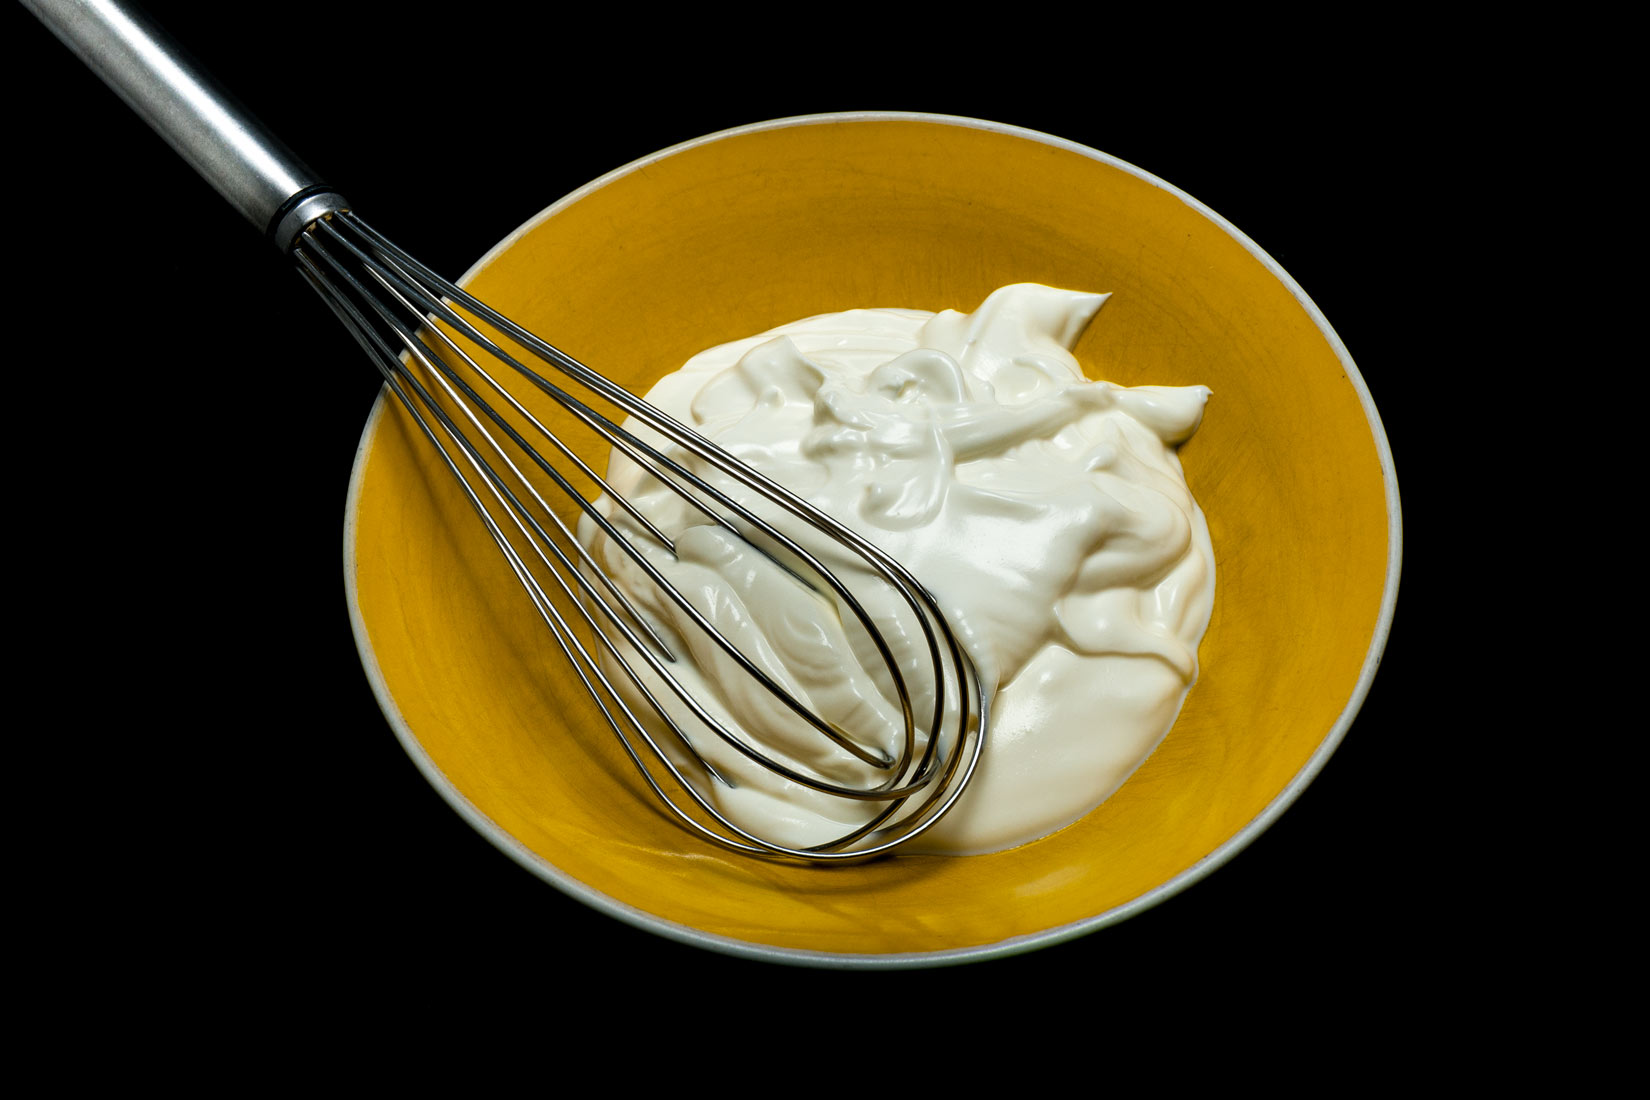 Jogurt vložíme do přiměřeně hluboké misky